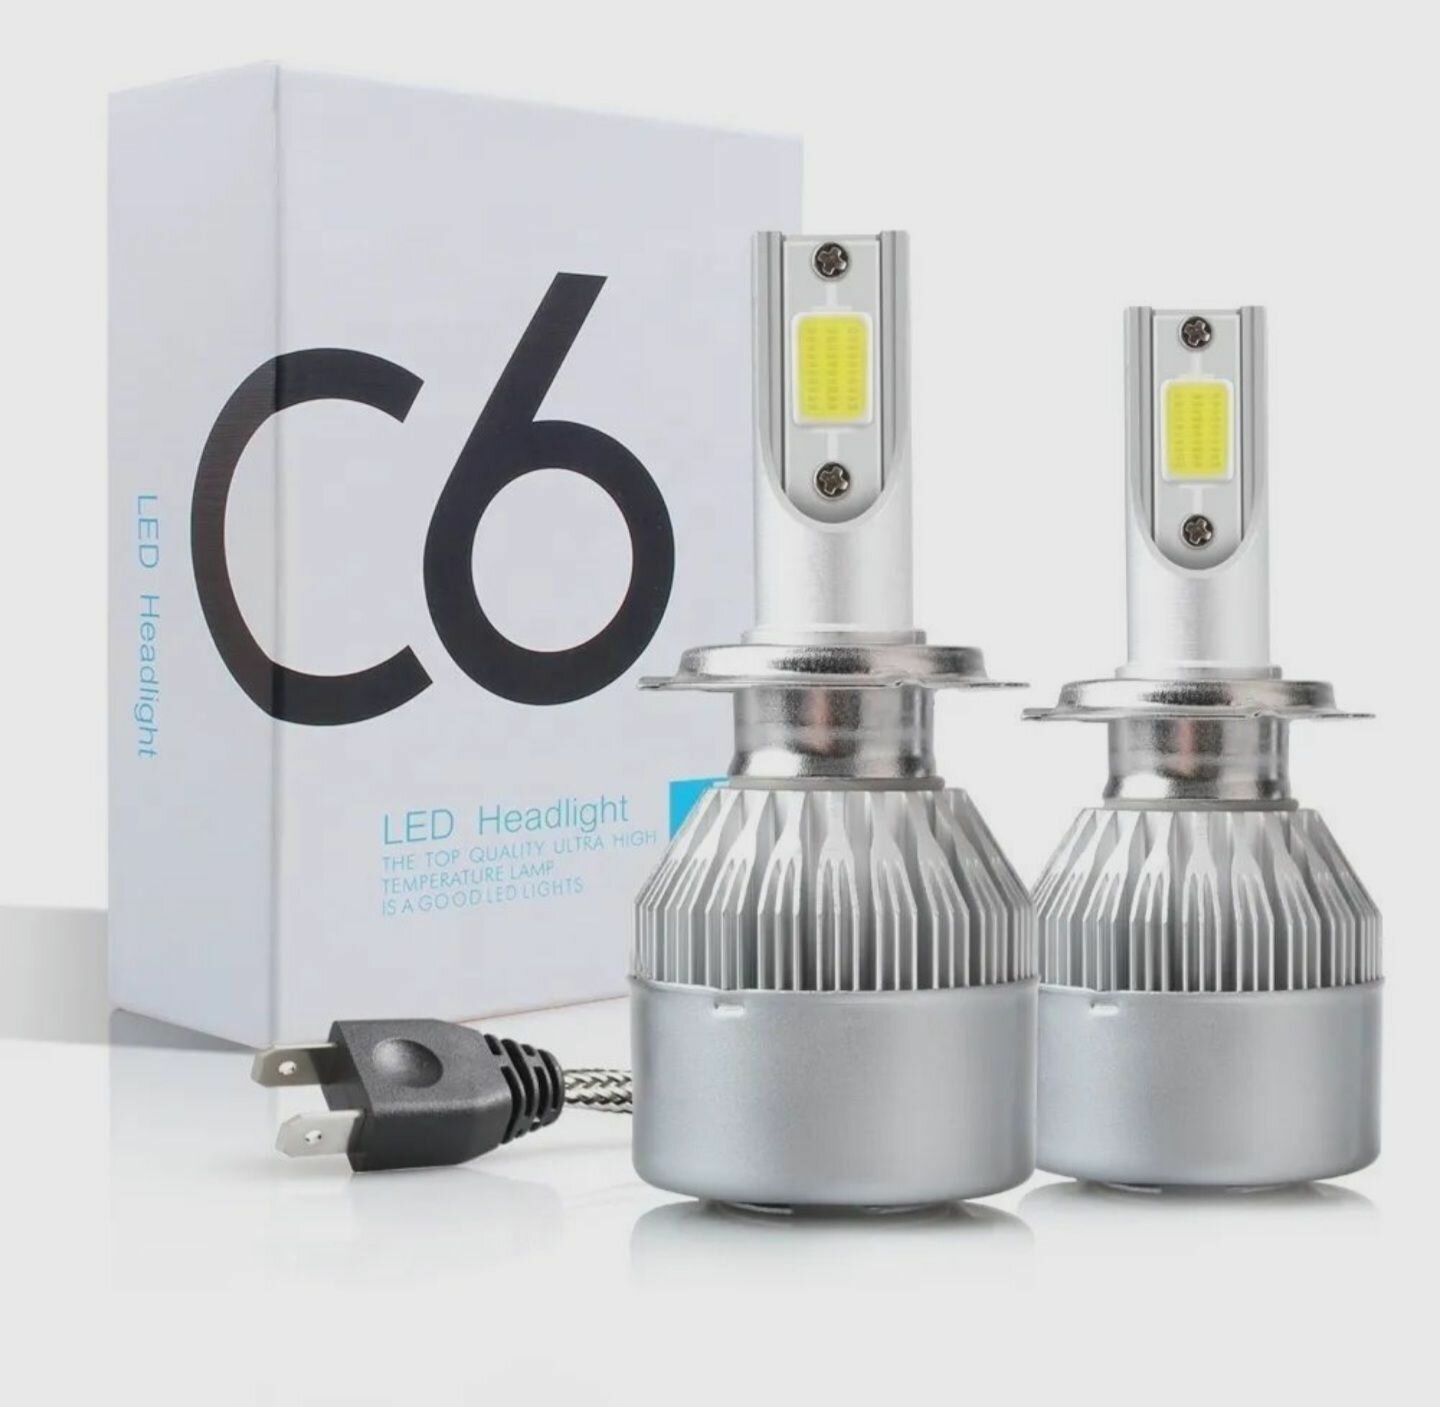 Лампа светодиодная LED C6 цоколь H3 4300К комплект 2шт для головного света и птф